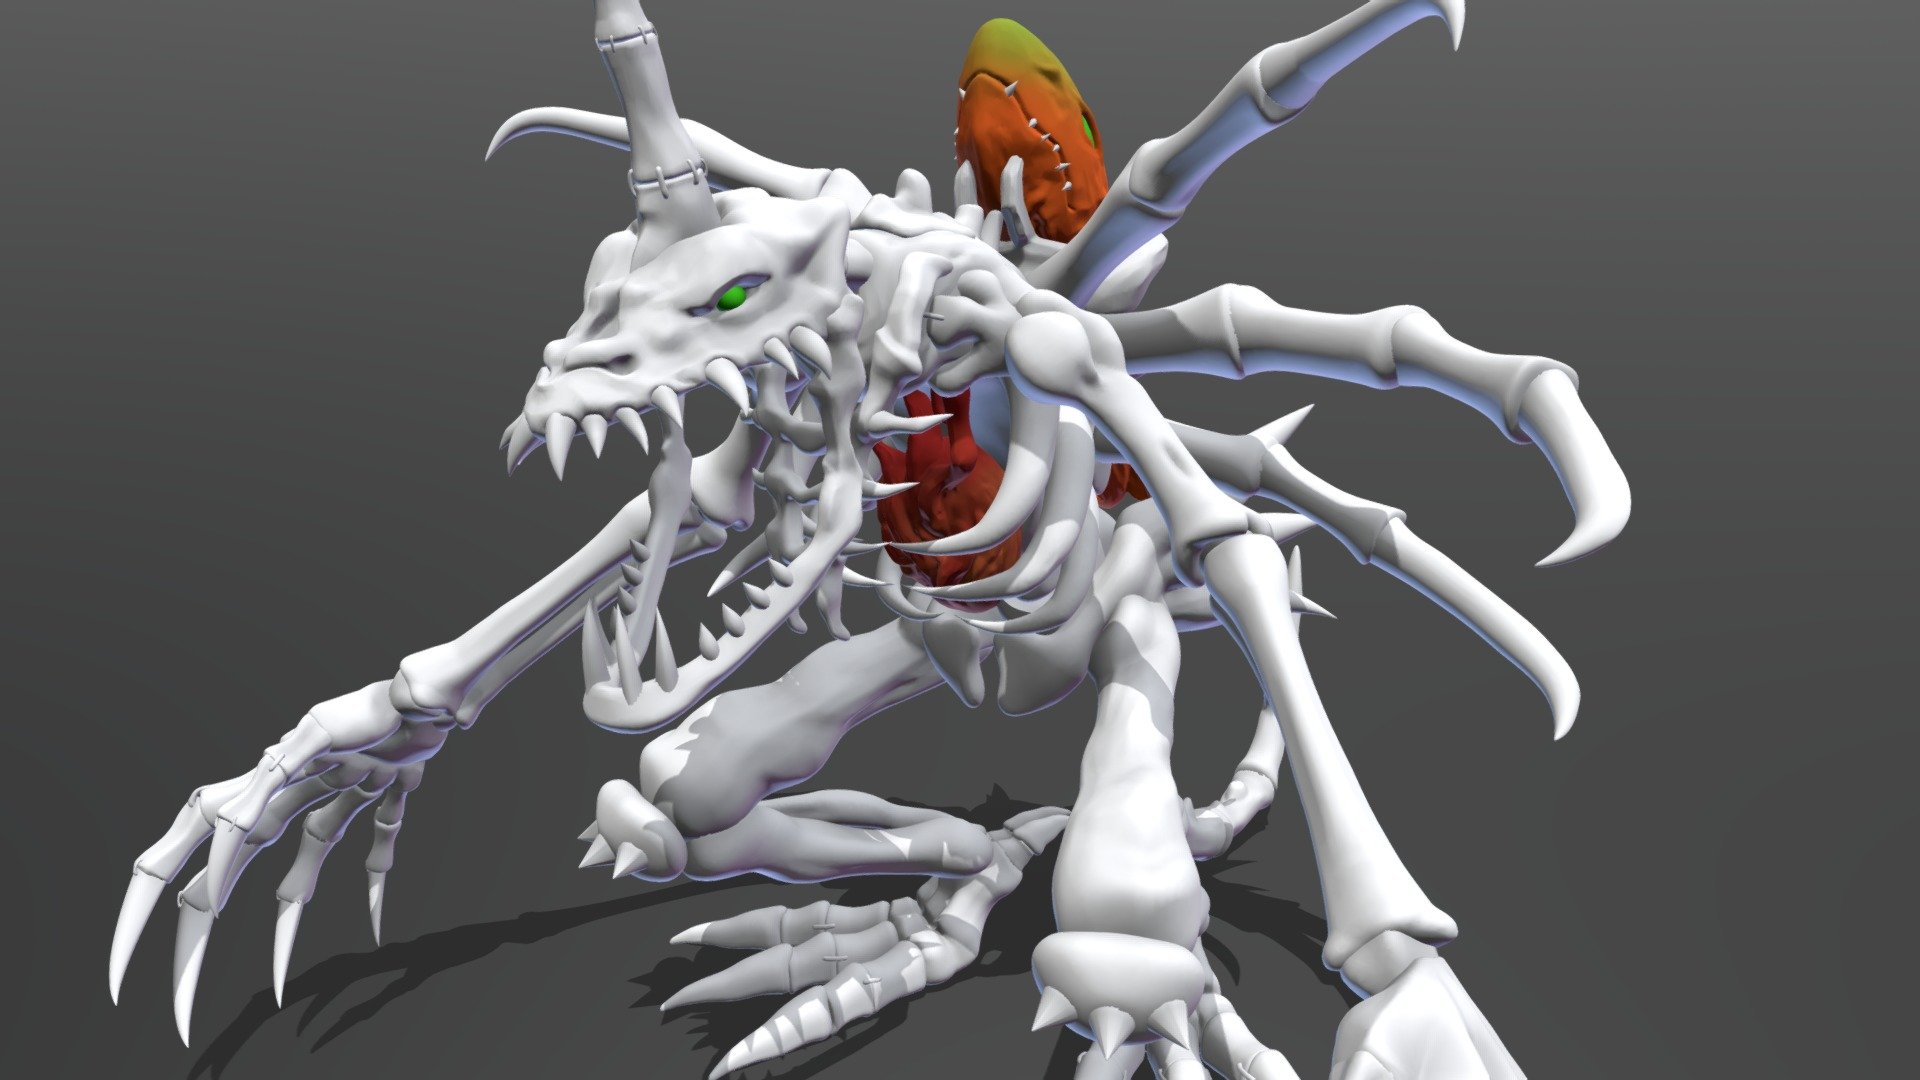 Digimon SkullGreymon - 3D model by kishi (@ash.takafumi) 3d model